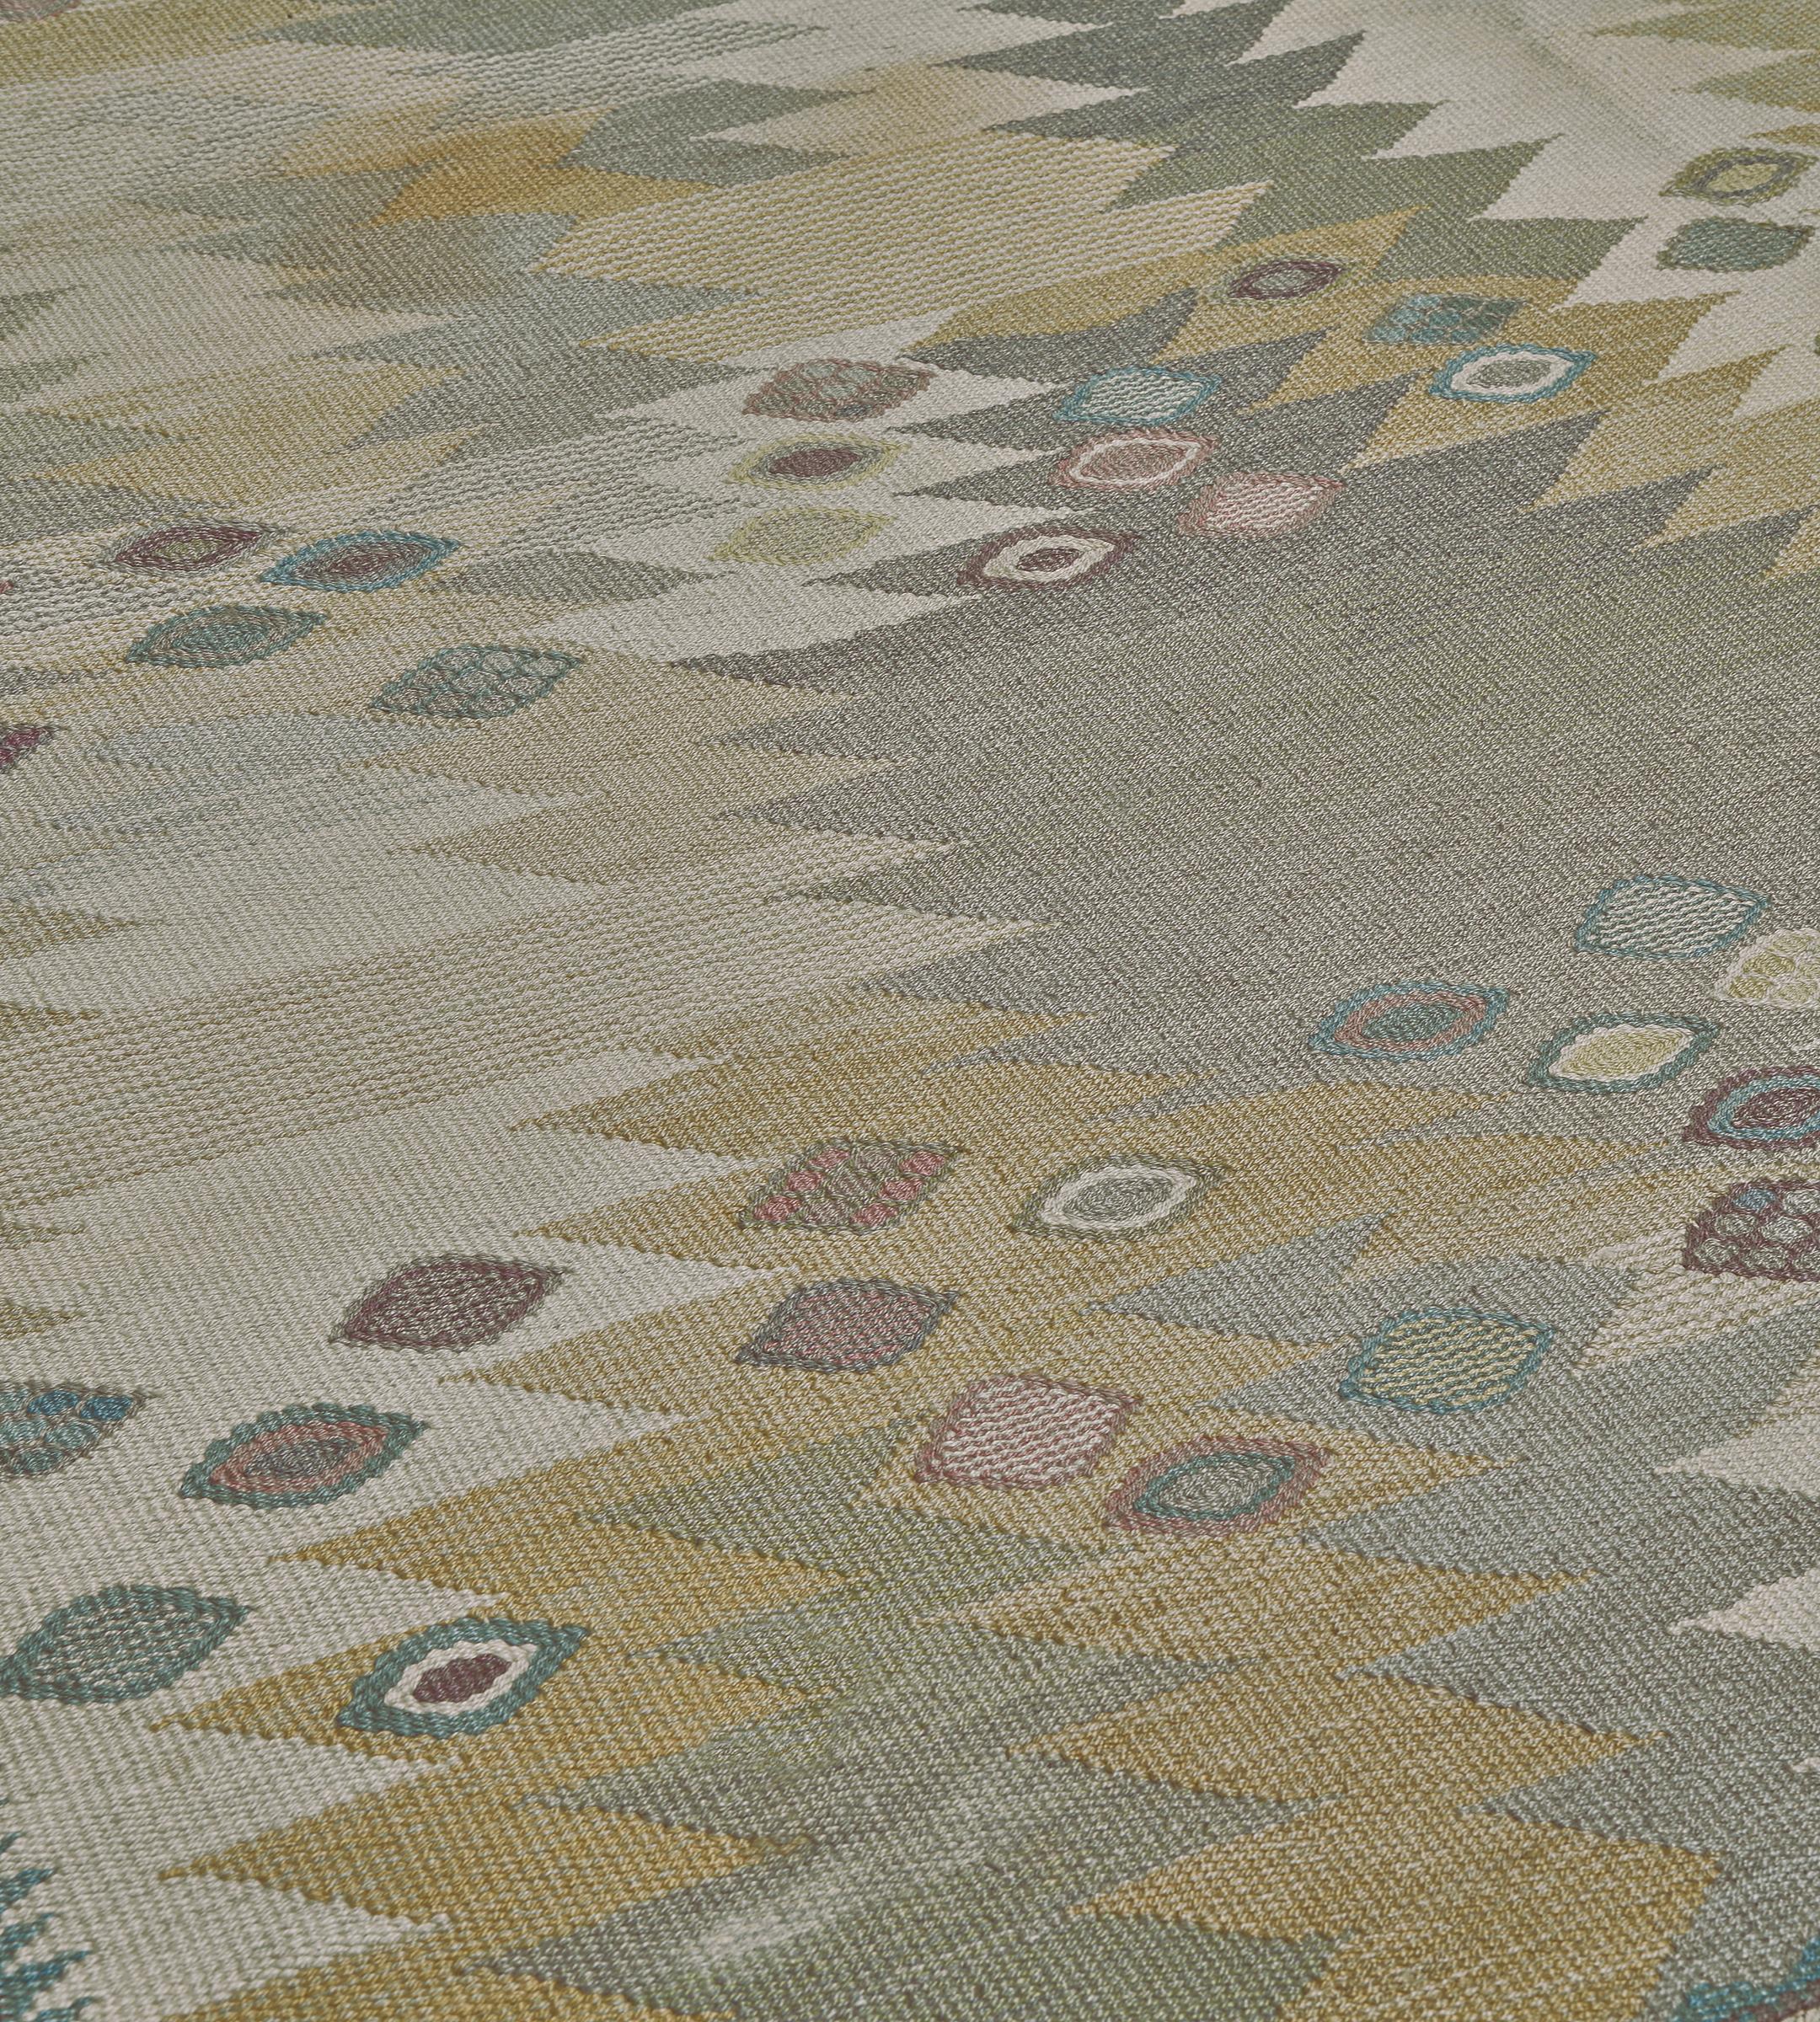 Dieser handgewebte schwedische Teppich im Vintage-Stil hat ein tonales Gesamtfeld aus Kamel-, Beige-, Salbei- und Grautönen, in das ein gezacktes geometrisches Motiv eingewoben ist, das von polychromen, verstreuten Rautenreihen überlagert wird.